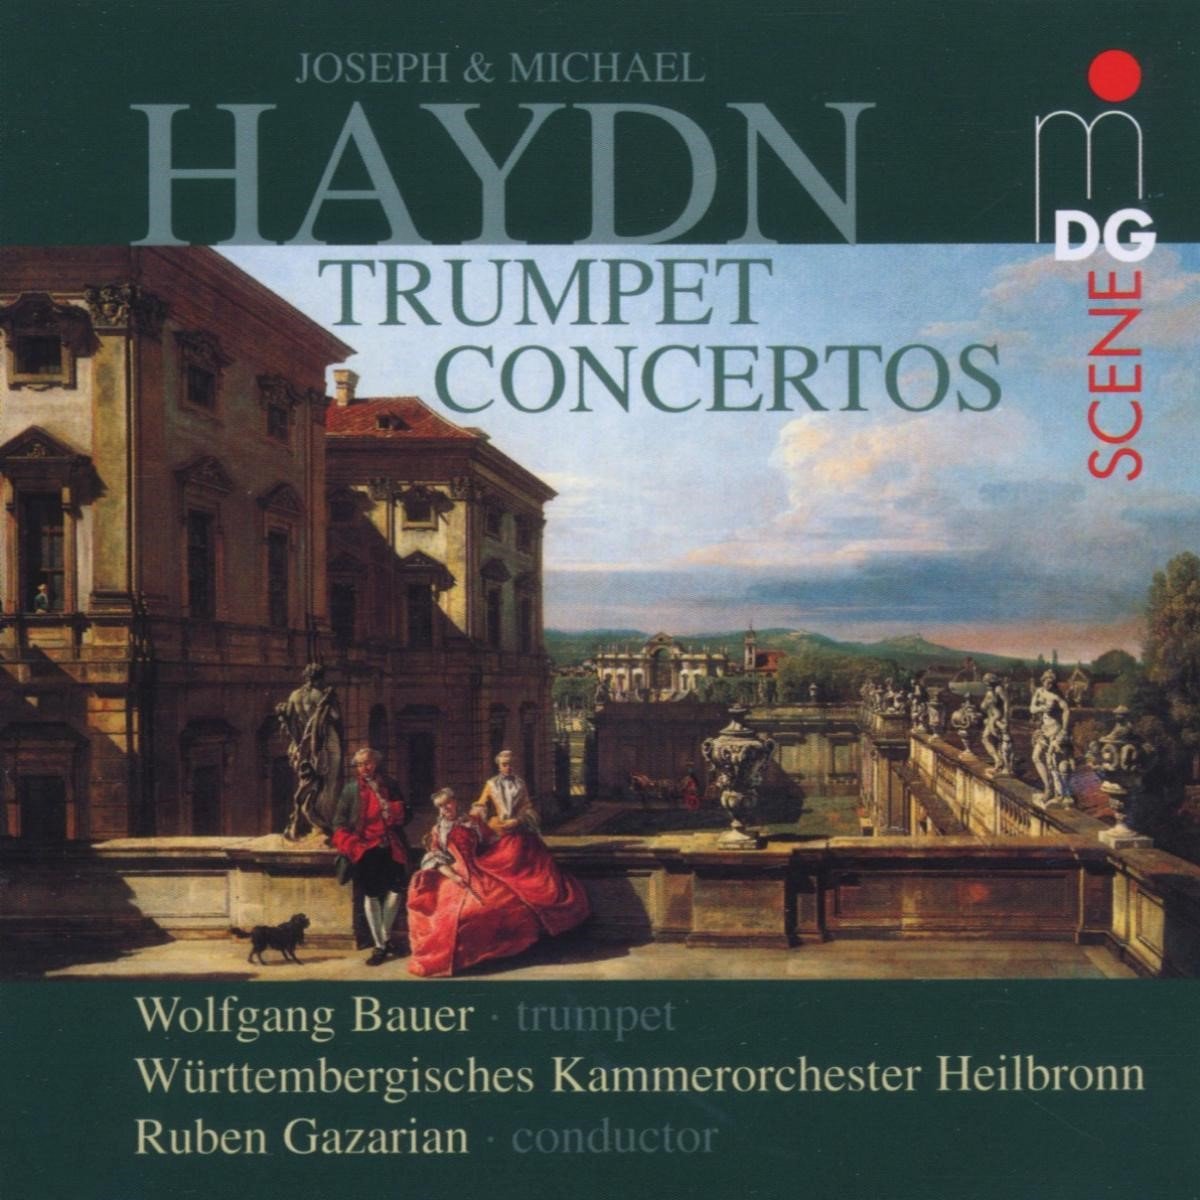 Wolfgang Bauer, Württembergisches Kammerorchester Heilbronn, Ruben Gazarian - Haydn: Trumpet Concertos (Super Audio CD) - Onbekend